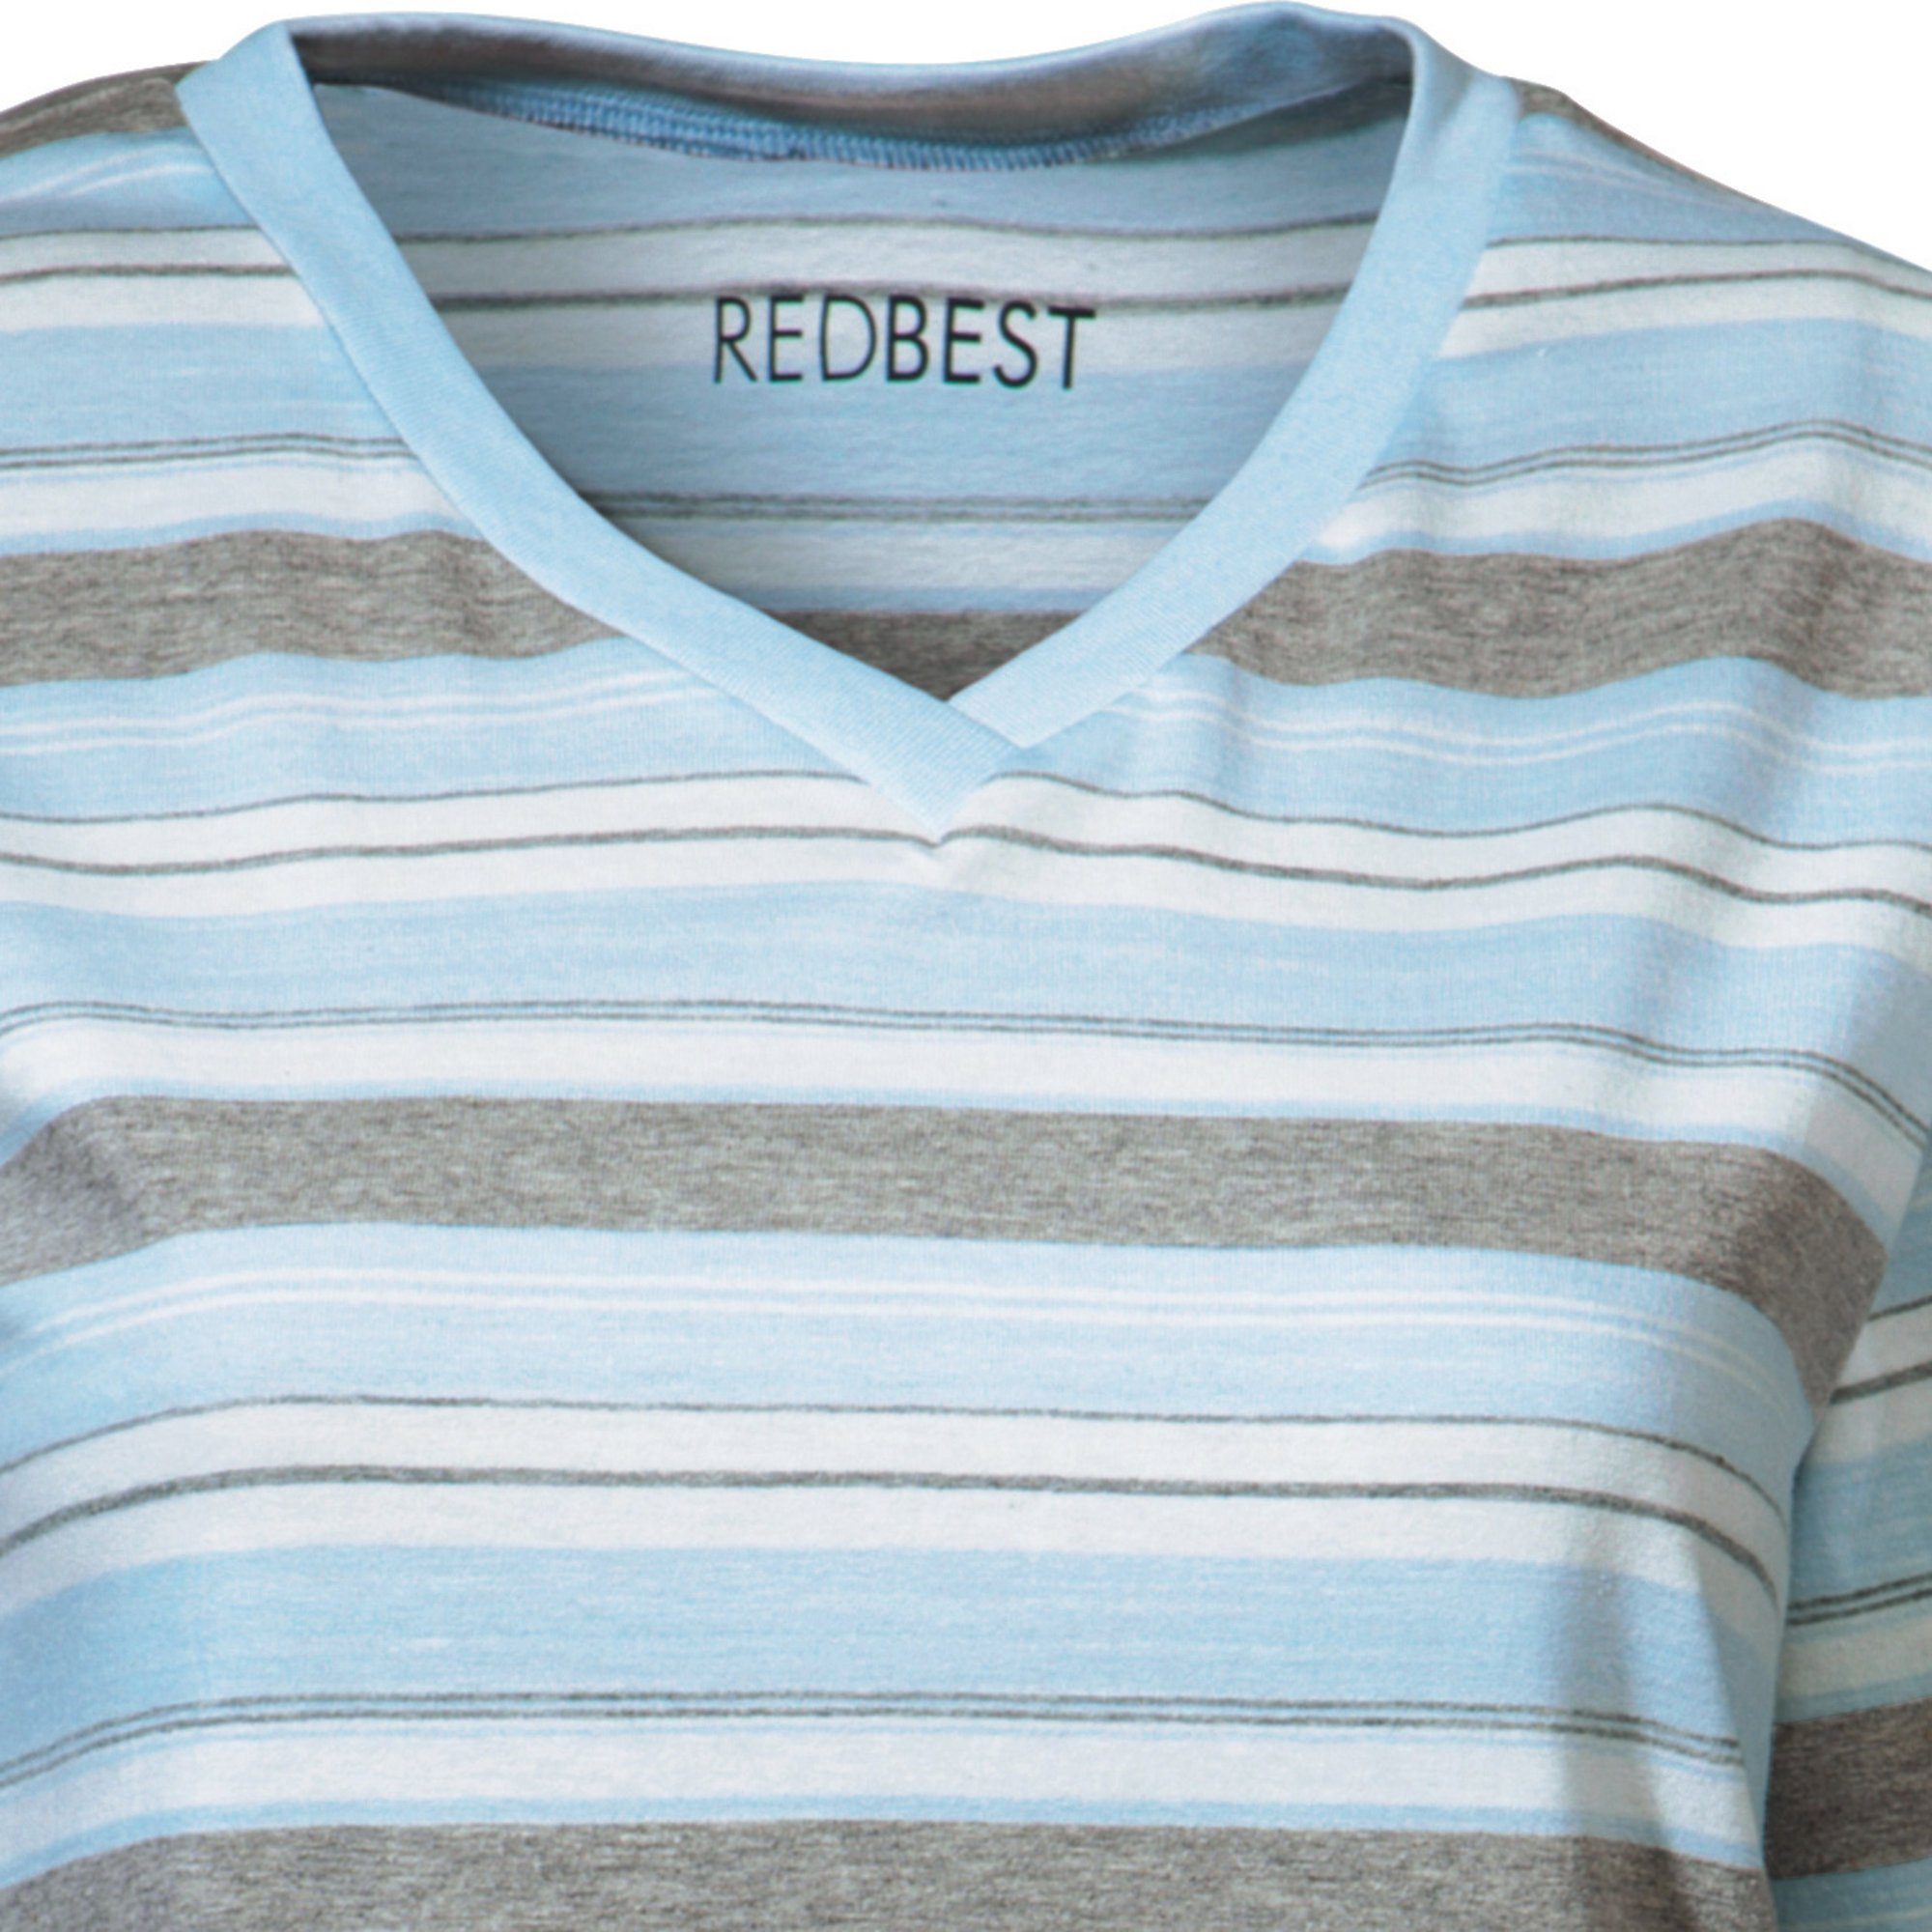 Nachthemd REDBEST Single-Jersey Damen-Nachthemd Streifen